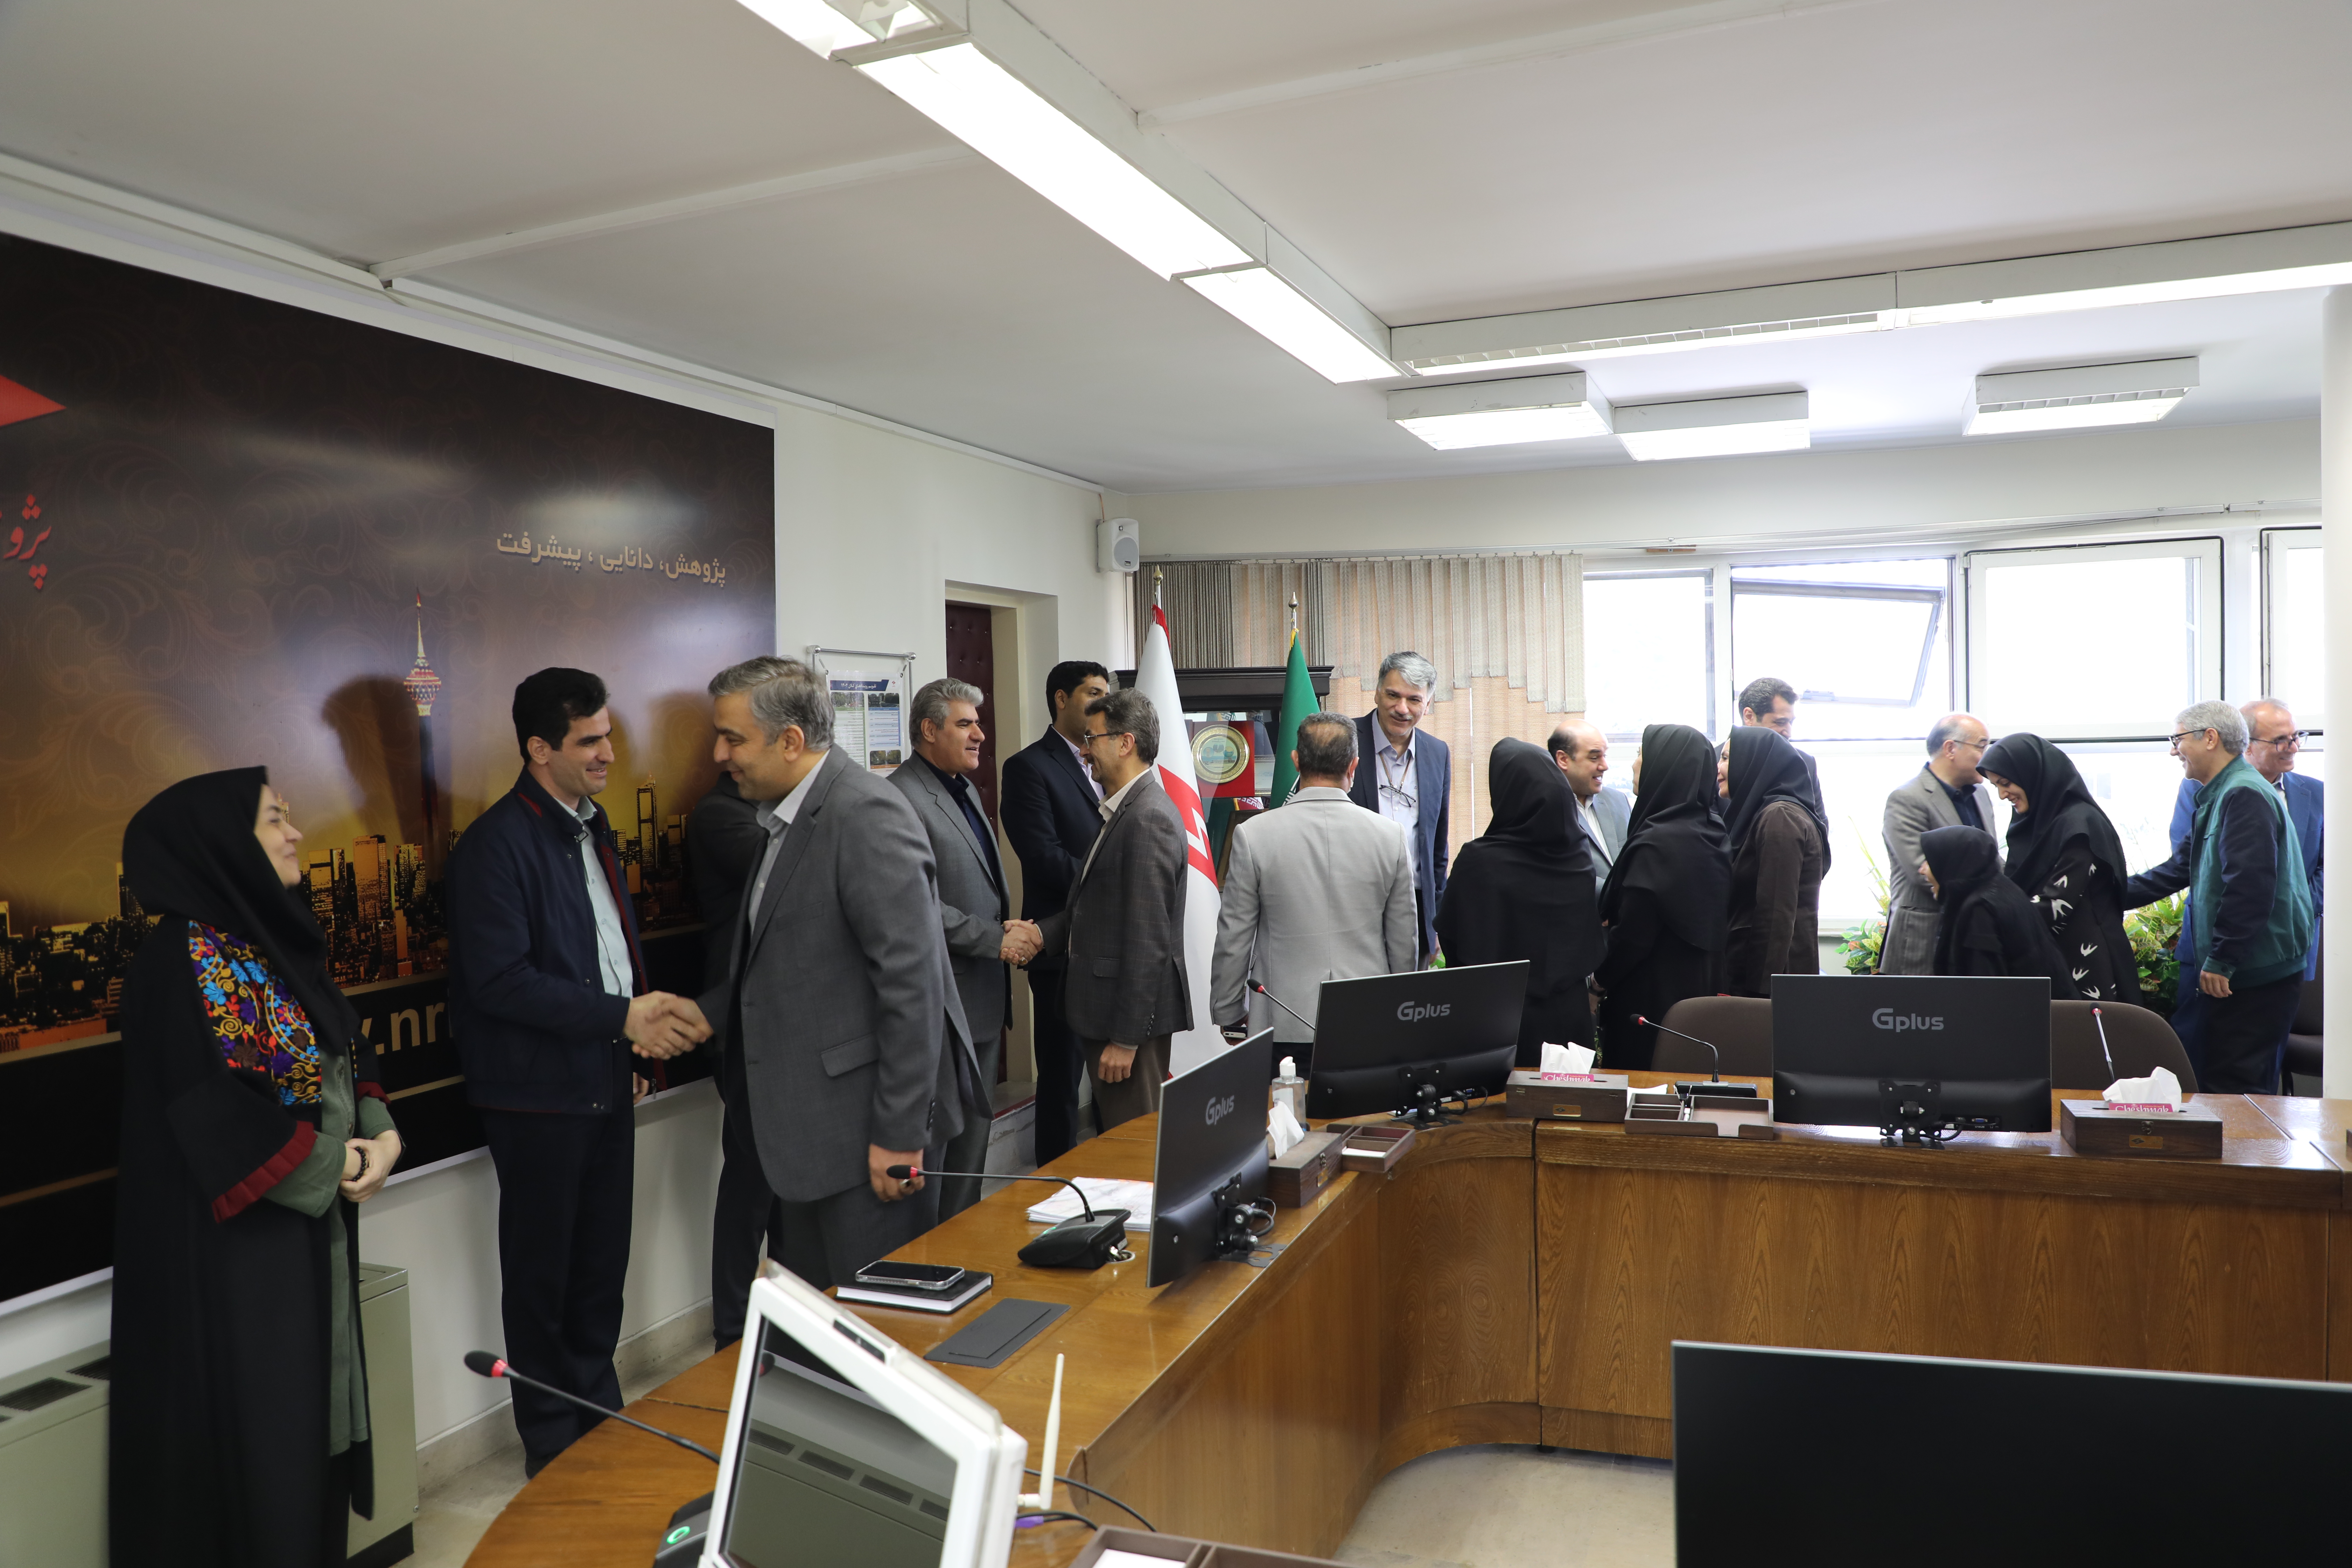 مراسم دیدار نوروزی رئیس و اعضای هیئت رئیسه پژوهشگاه نیرو با همکاران برگزار شد